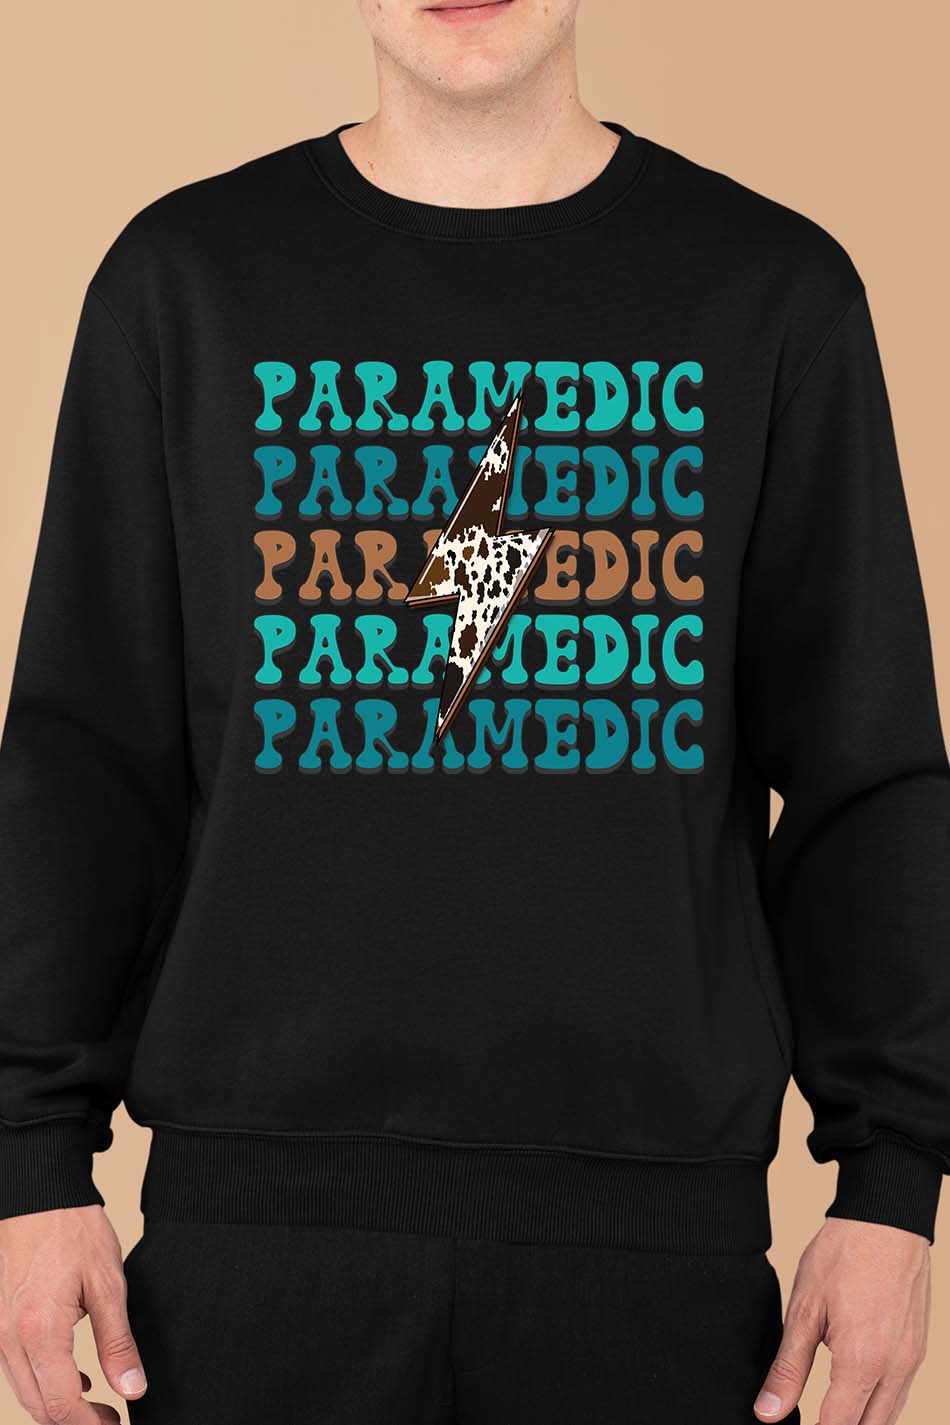 Paramedic Superpower Sweatshirt